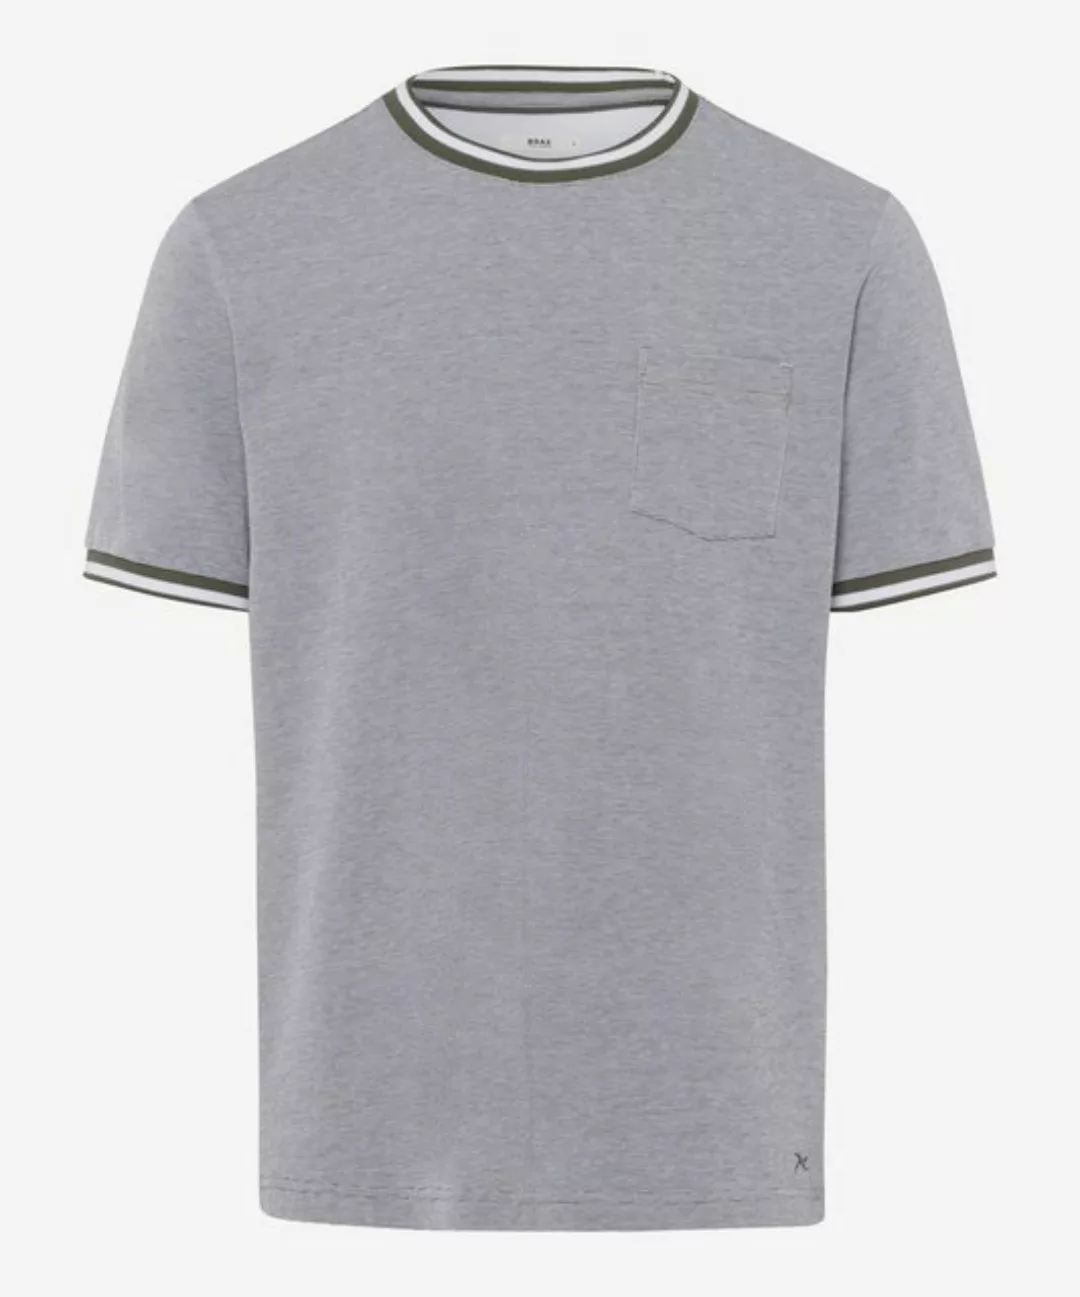 Brax T-Shirt STYLE.TODD günstig online kaufen